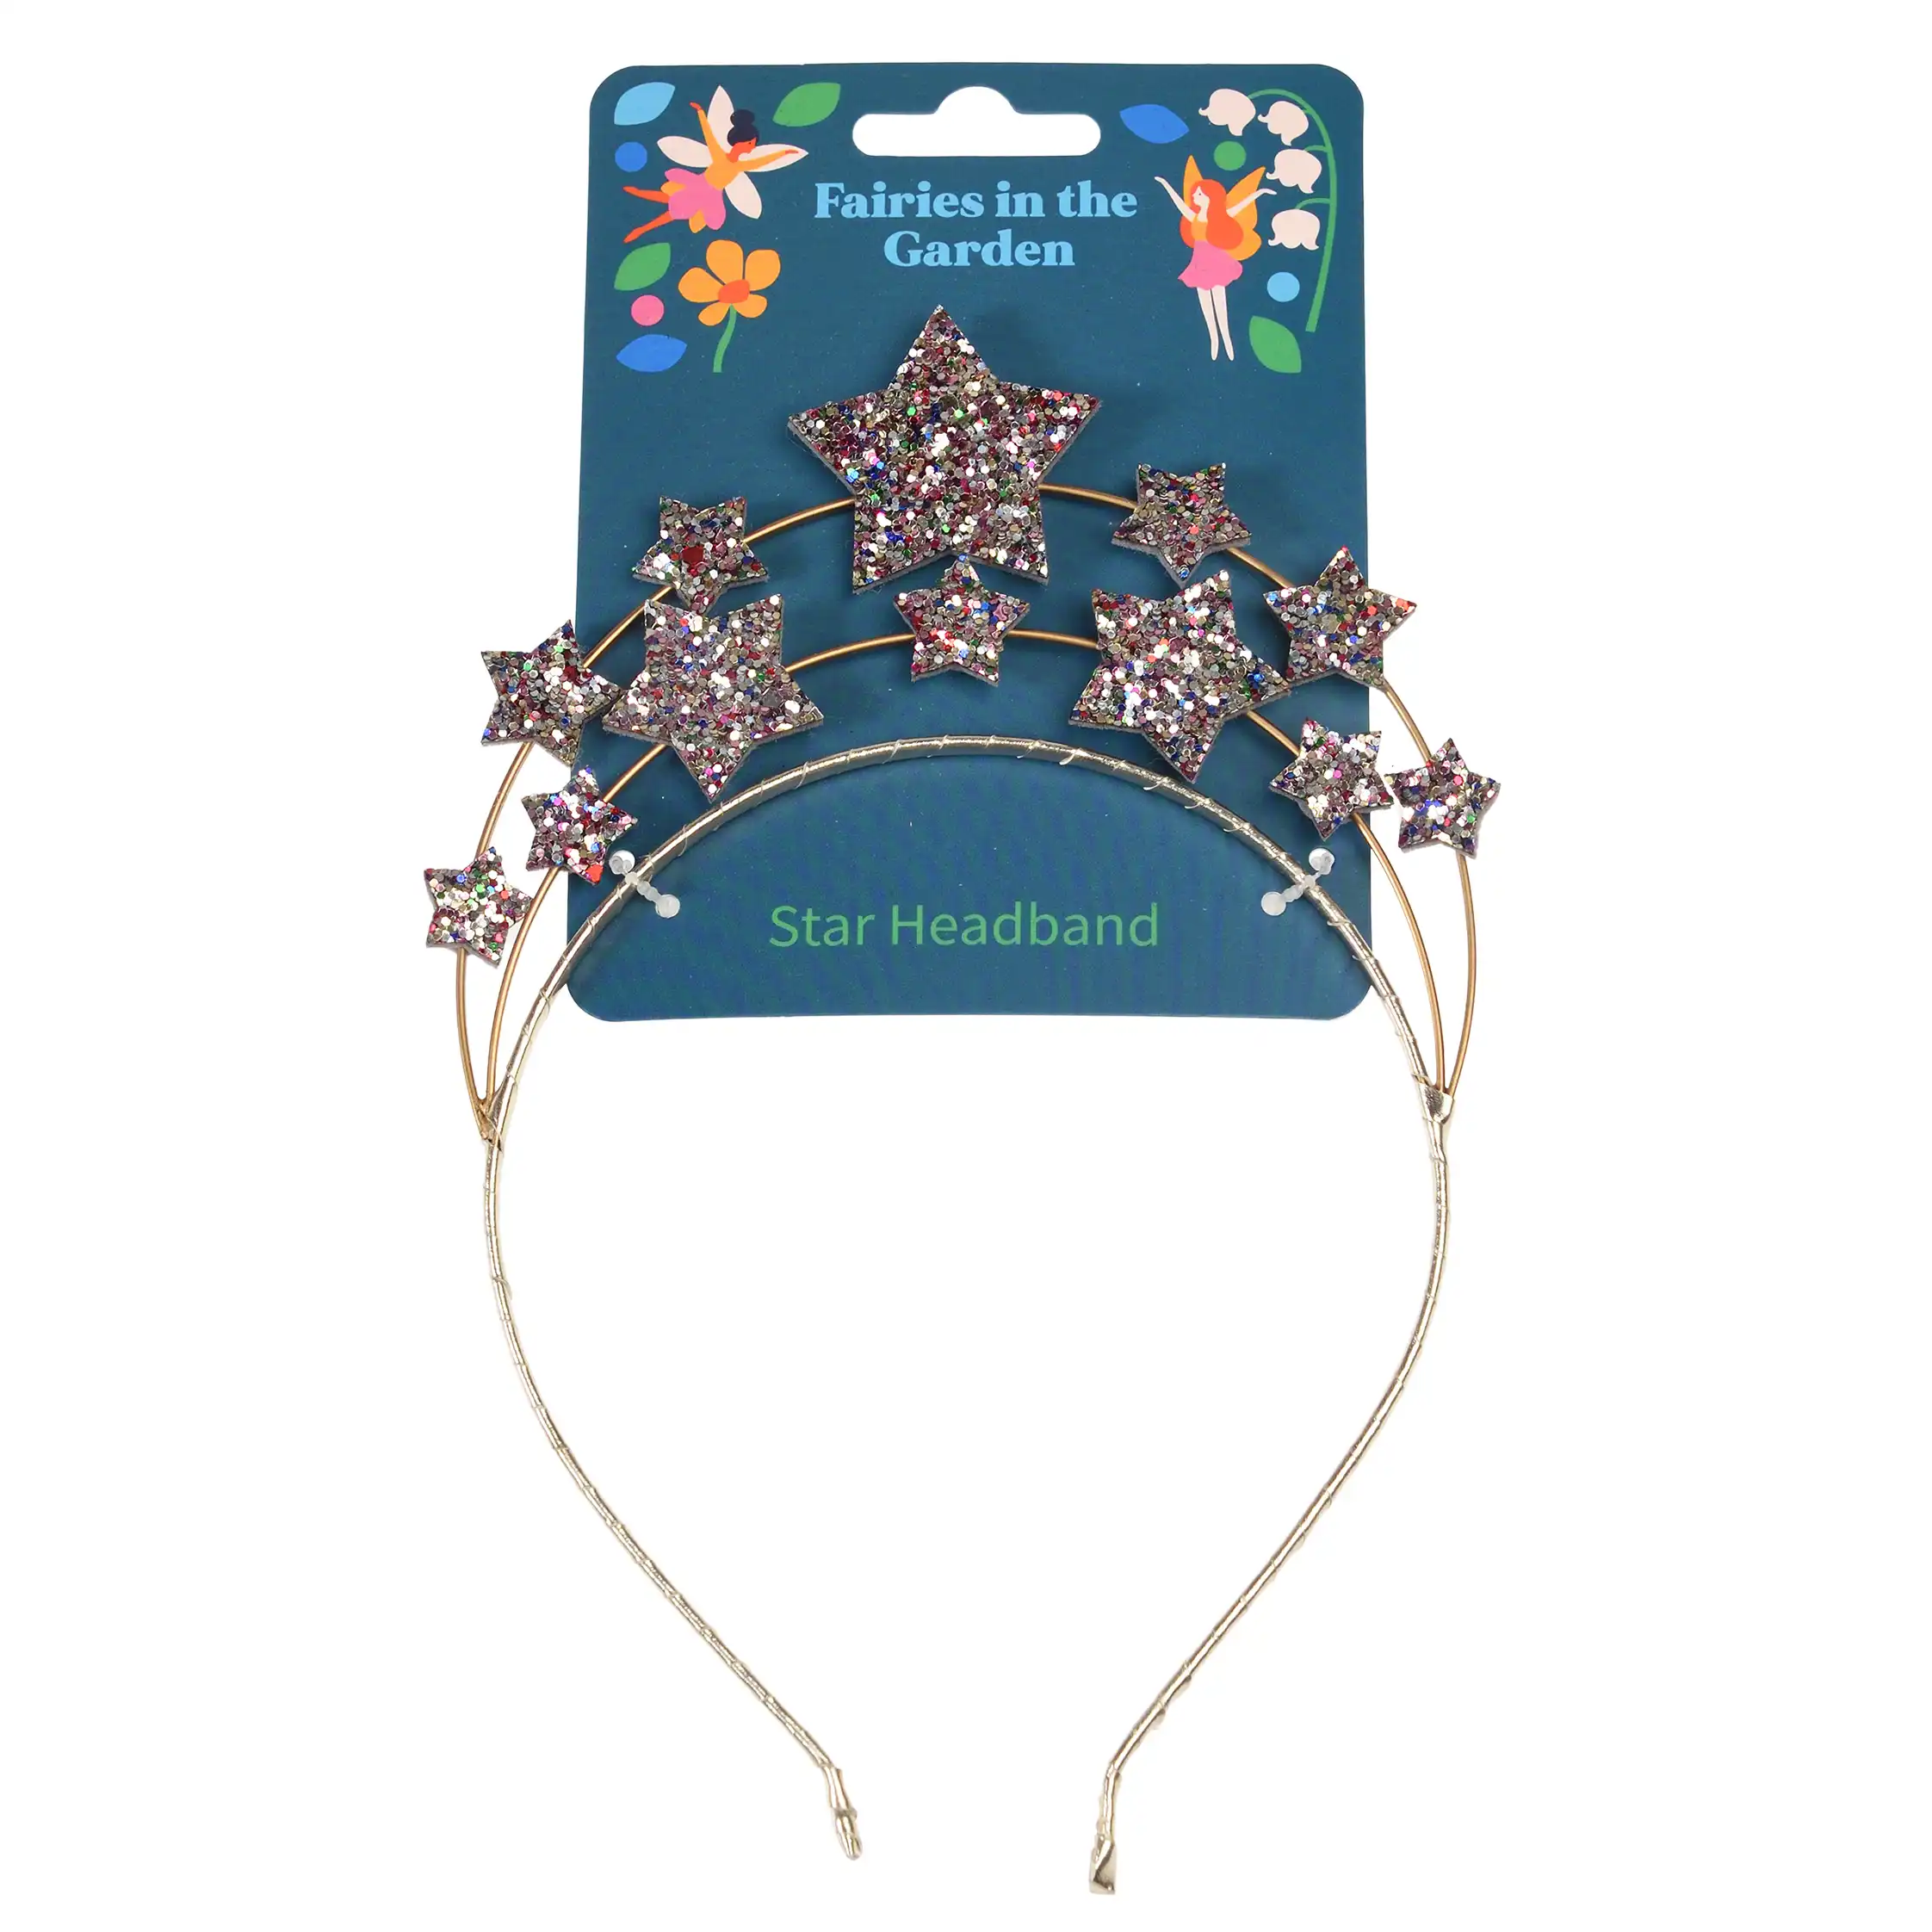 star headband - fairies in the garden